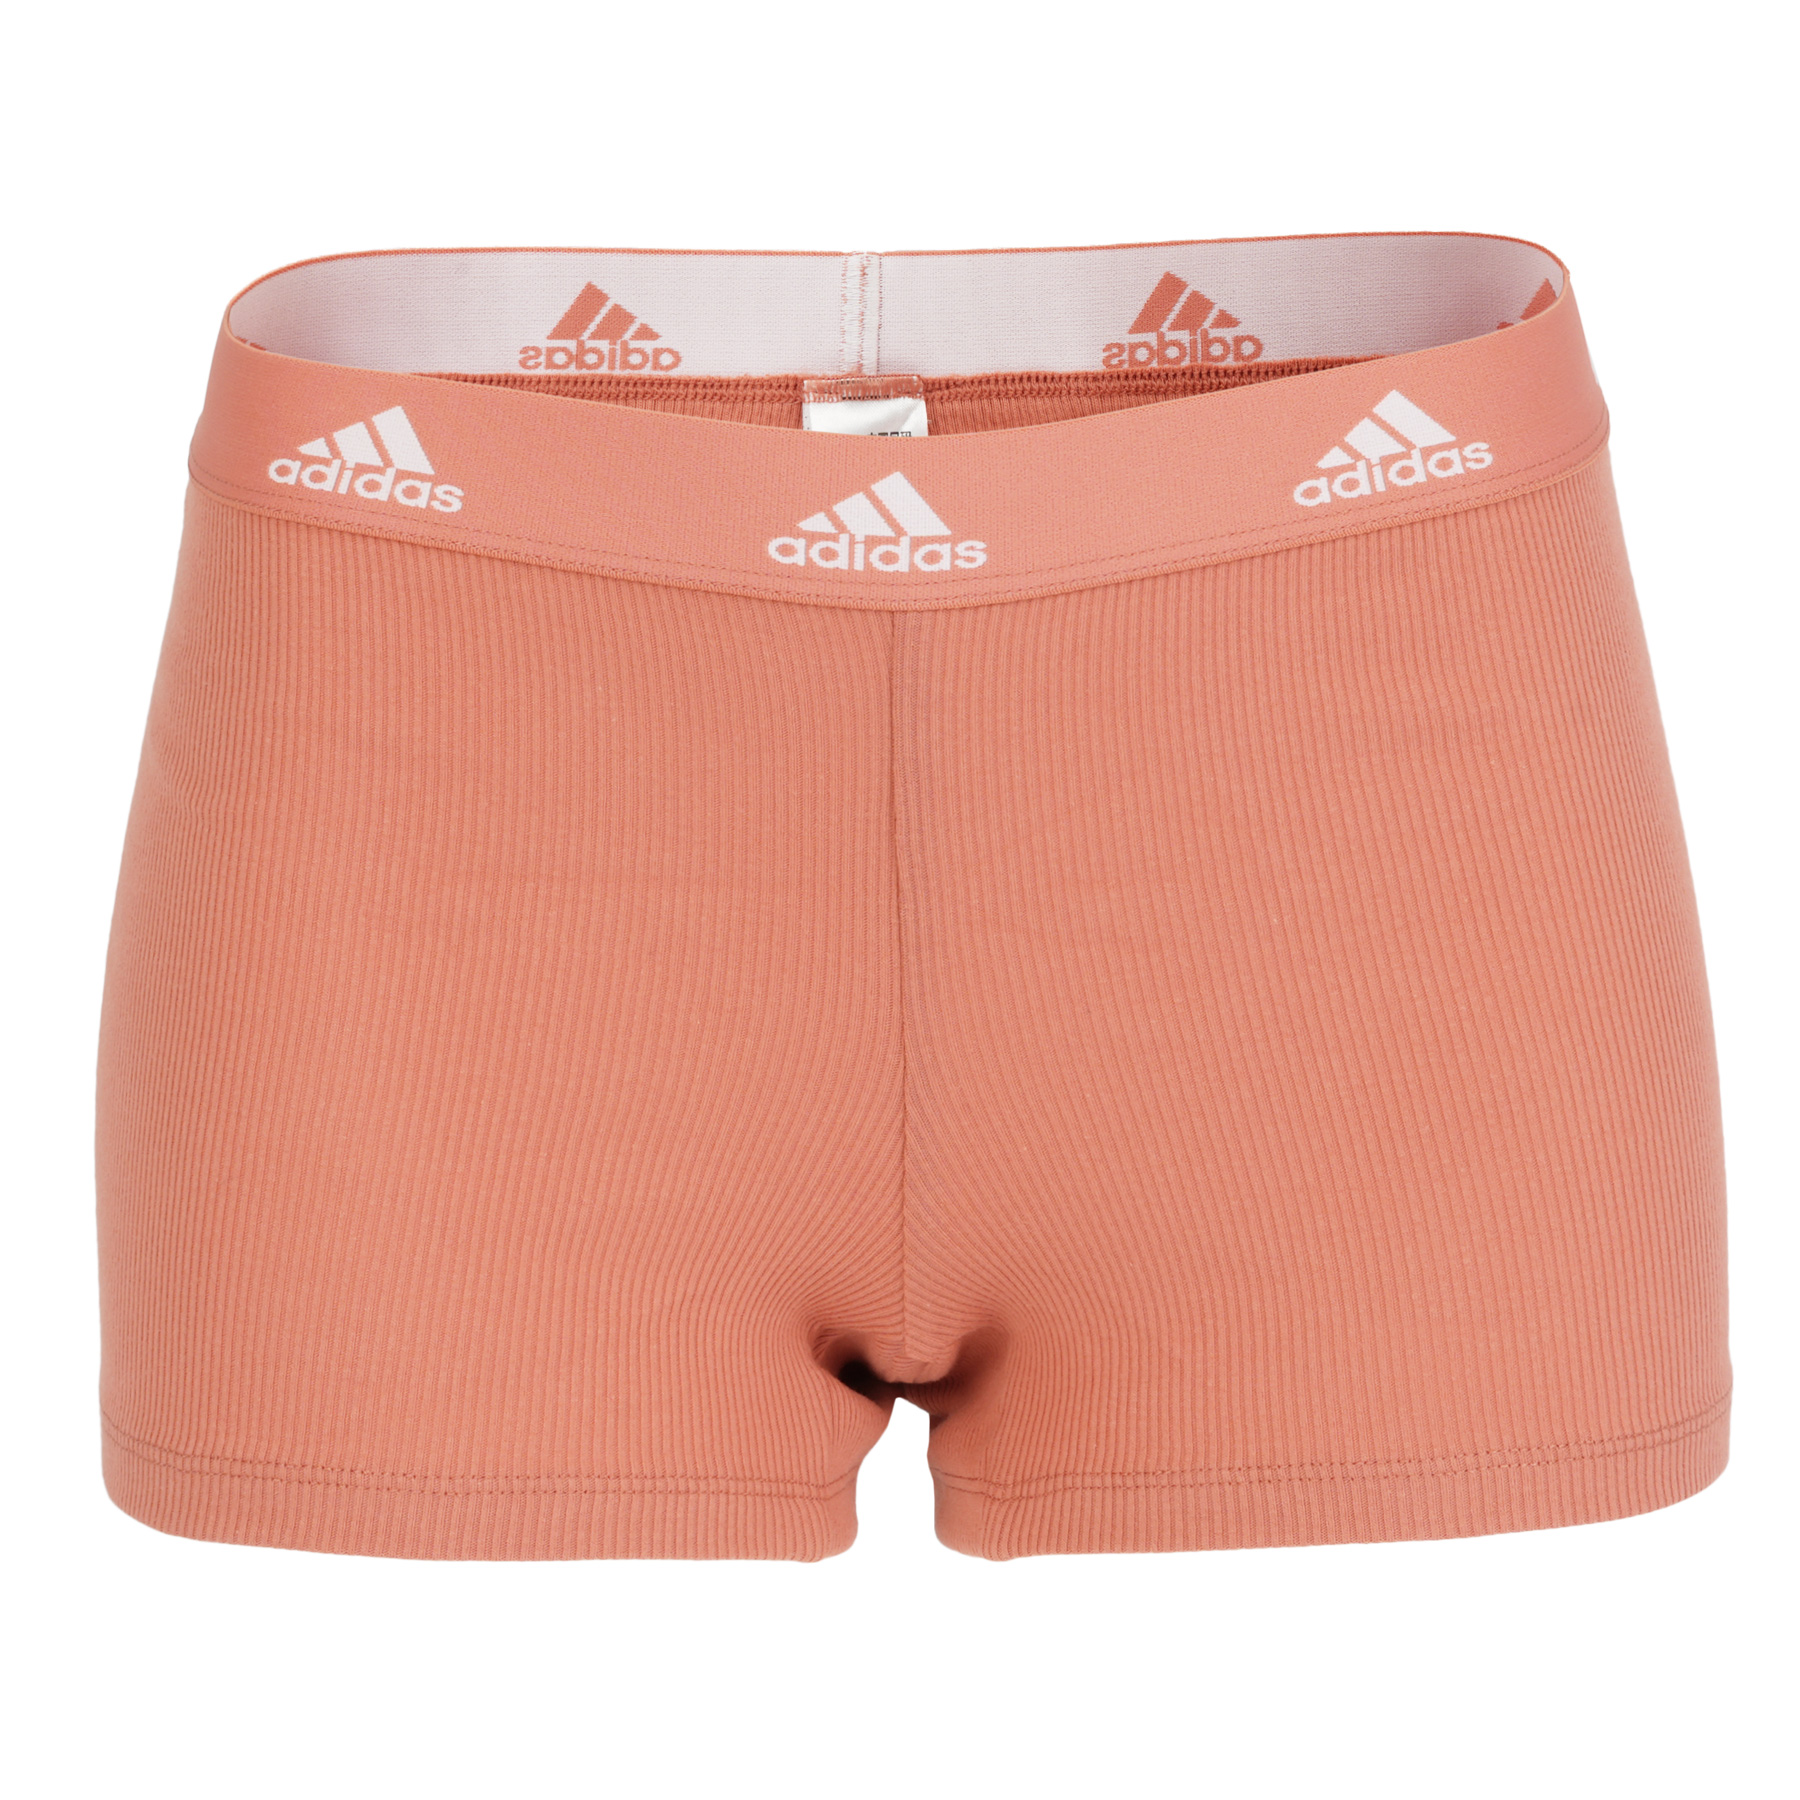 Immagine prodotto da adidas Sports Underwear Boxer Donna - Rib 2x2 Cotton - 523 - wonder clay